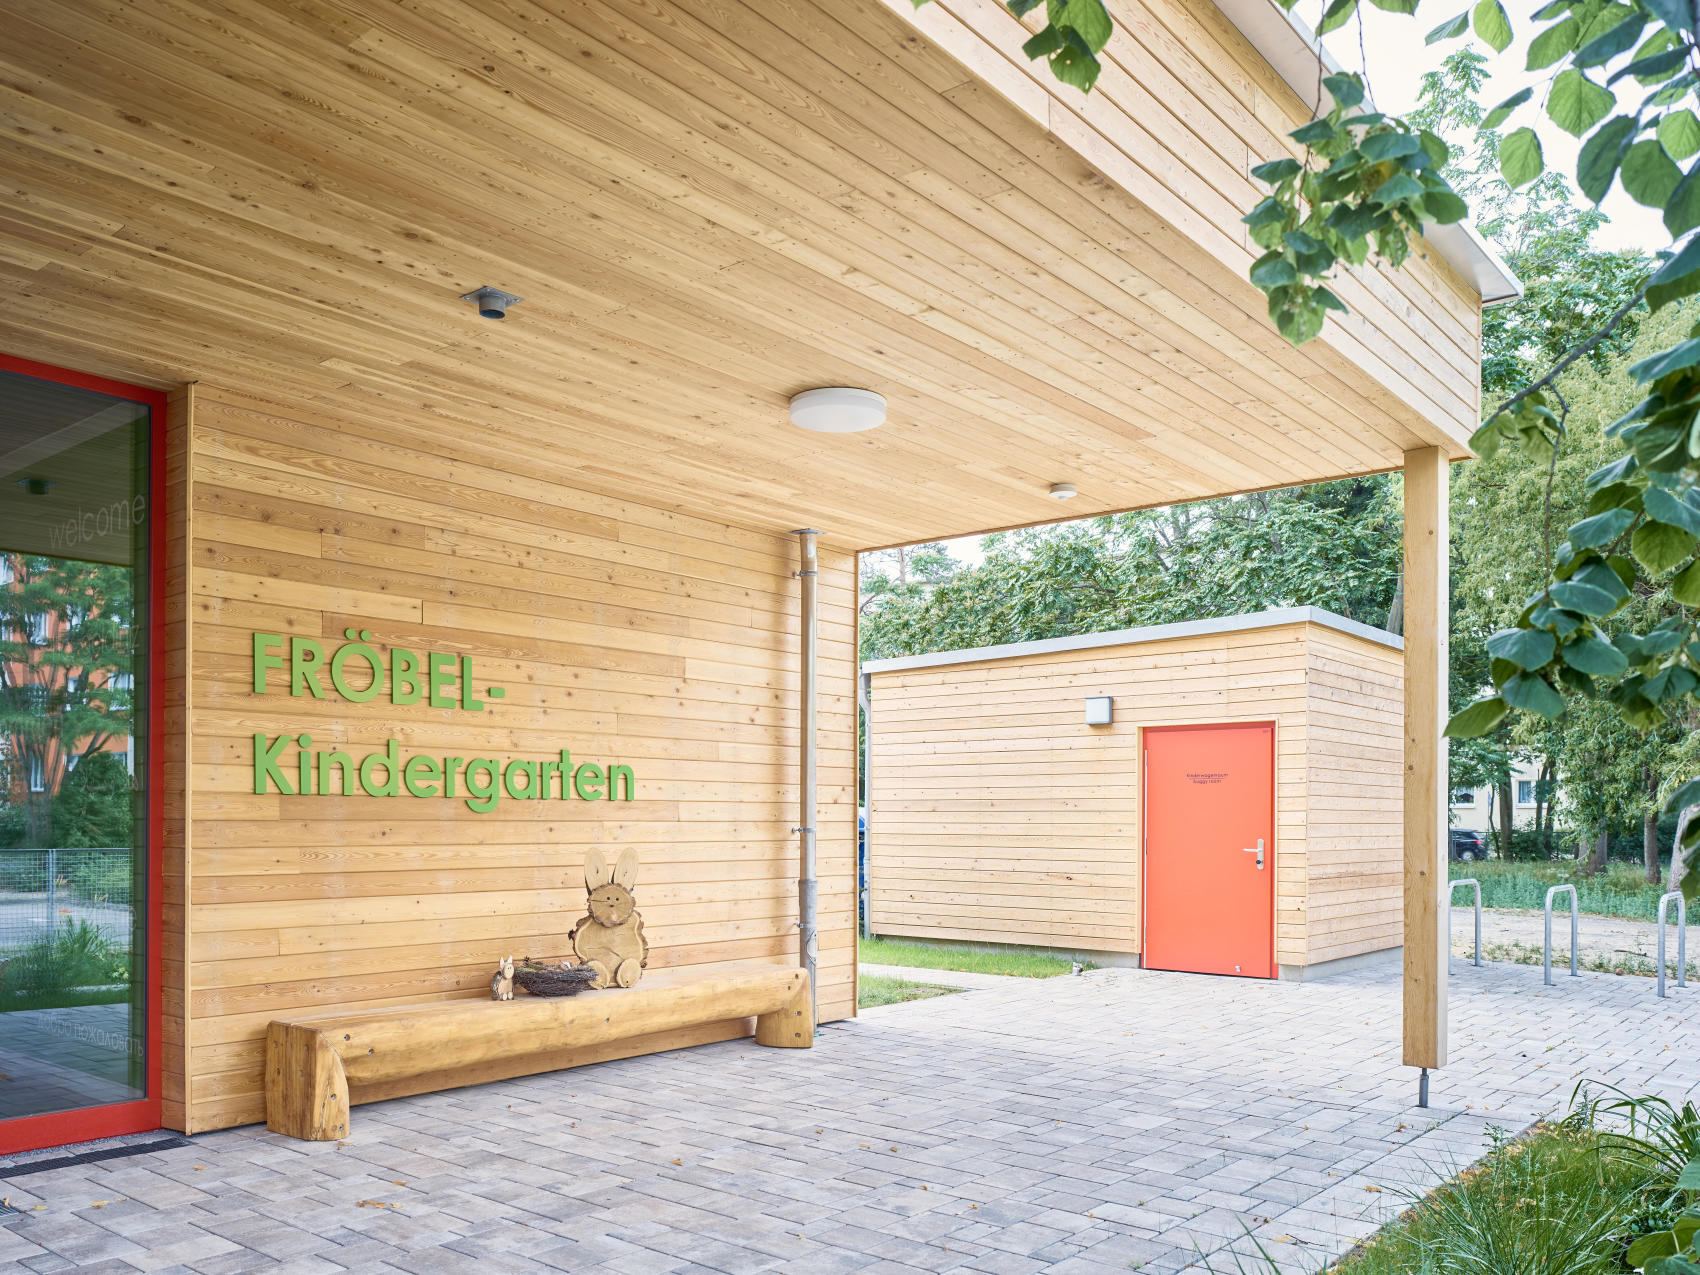 Bild 1 Fröbel-Kindergarten Am Wurzelberg in Ludwigsfelde